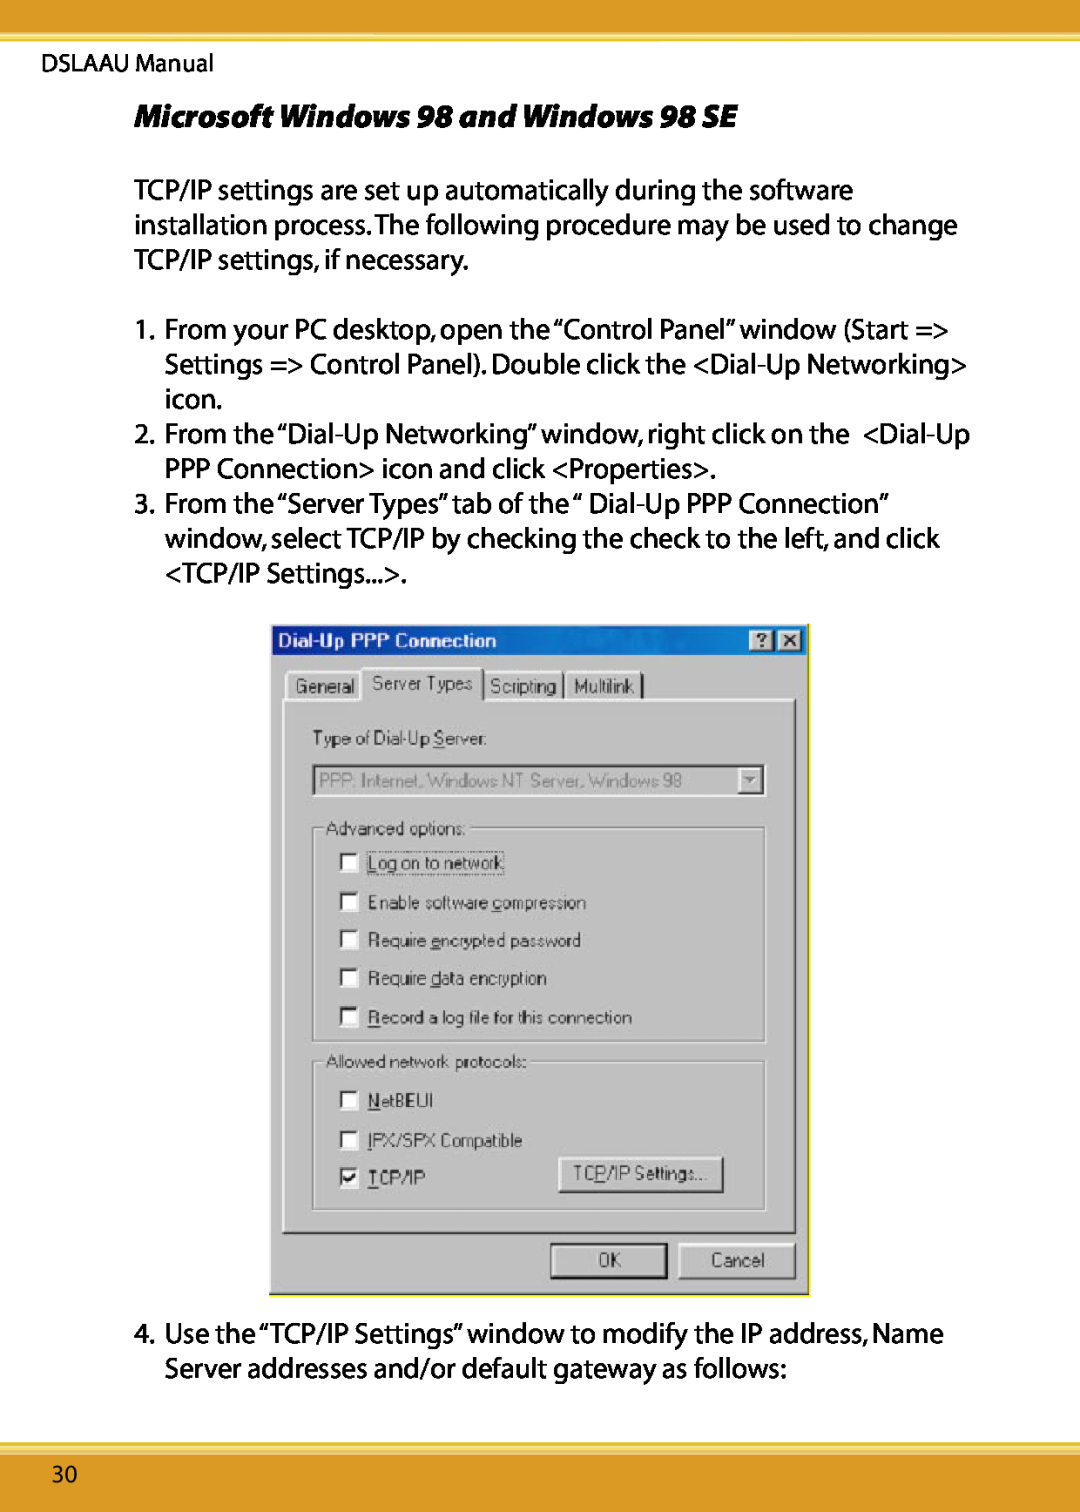 Corega user manual Microsoft Windows 98 and Windows 98 SE, DSLAAU Manual 